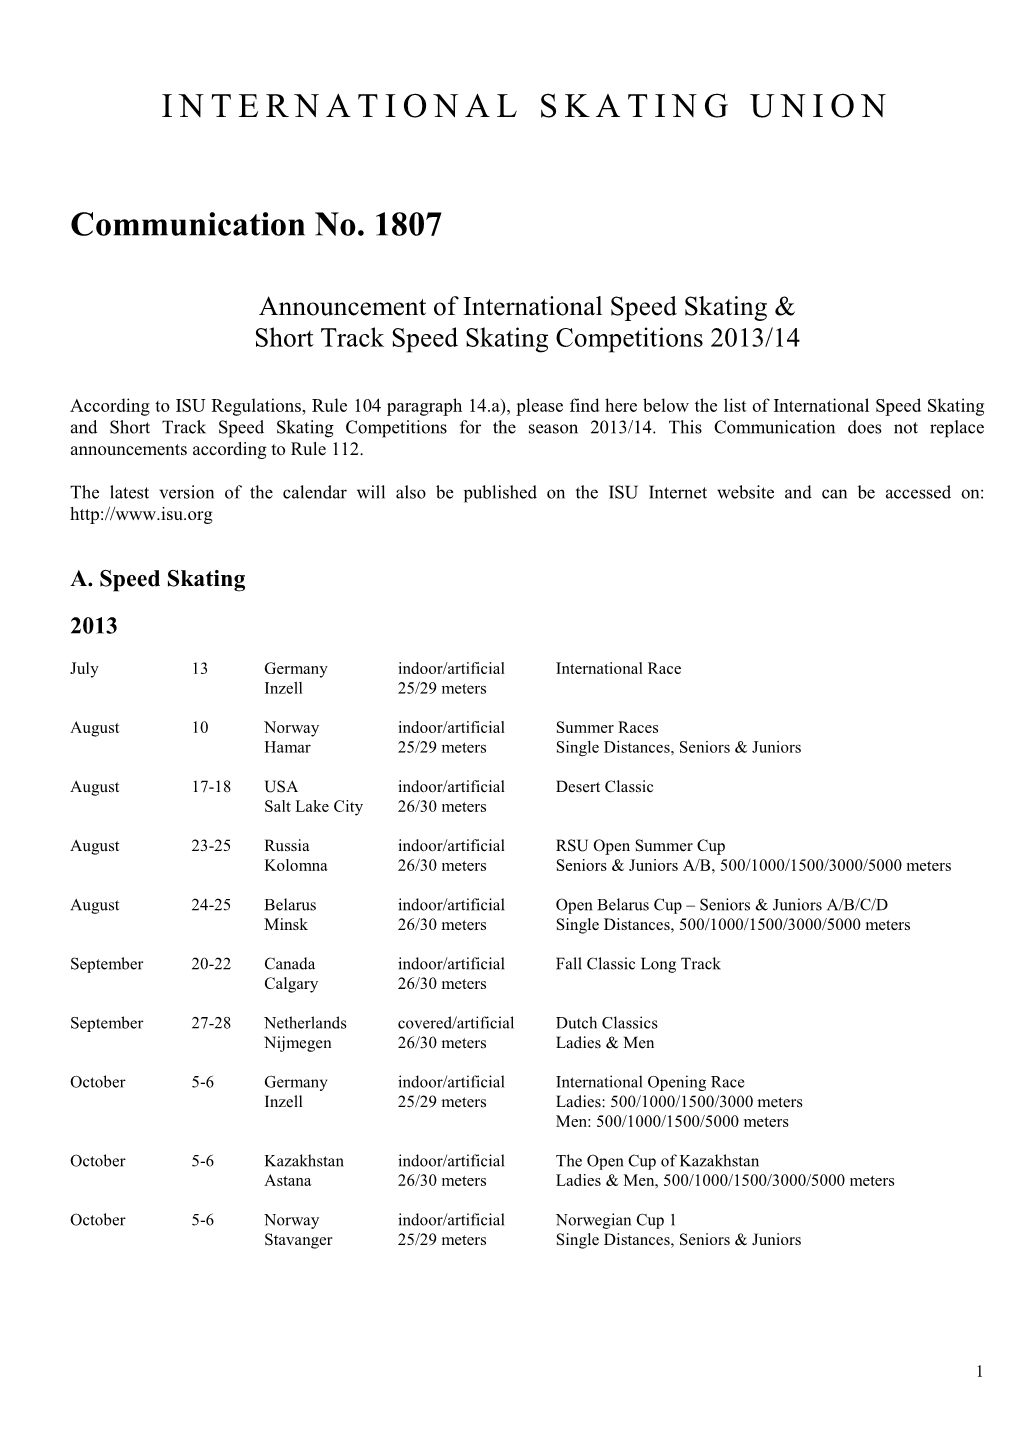 ISU Communication 1807